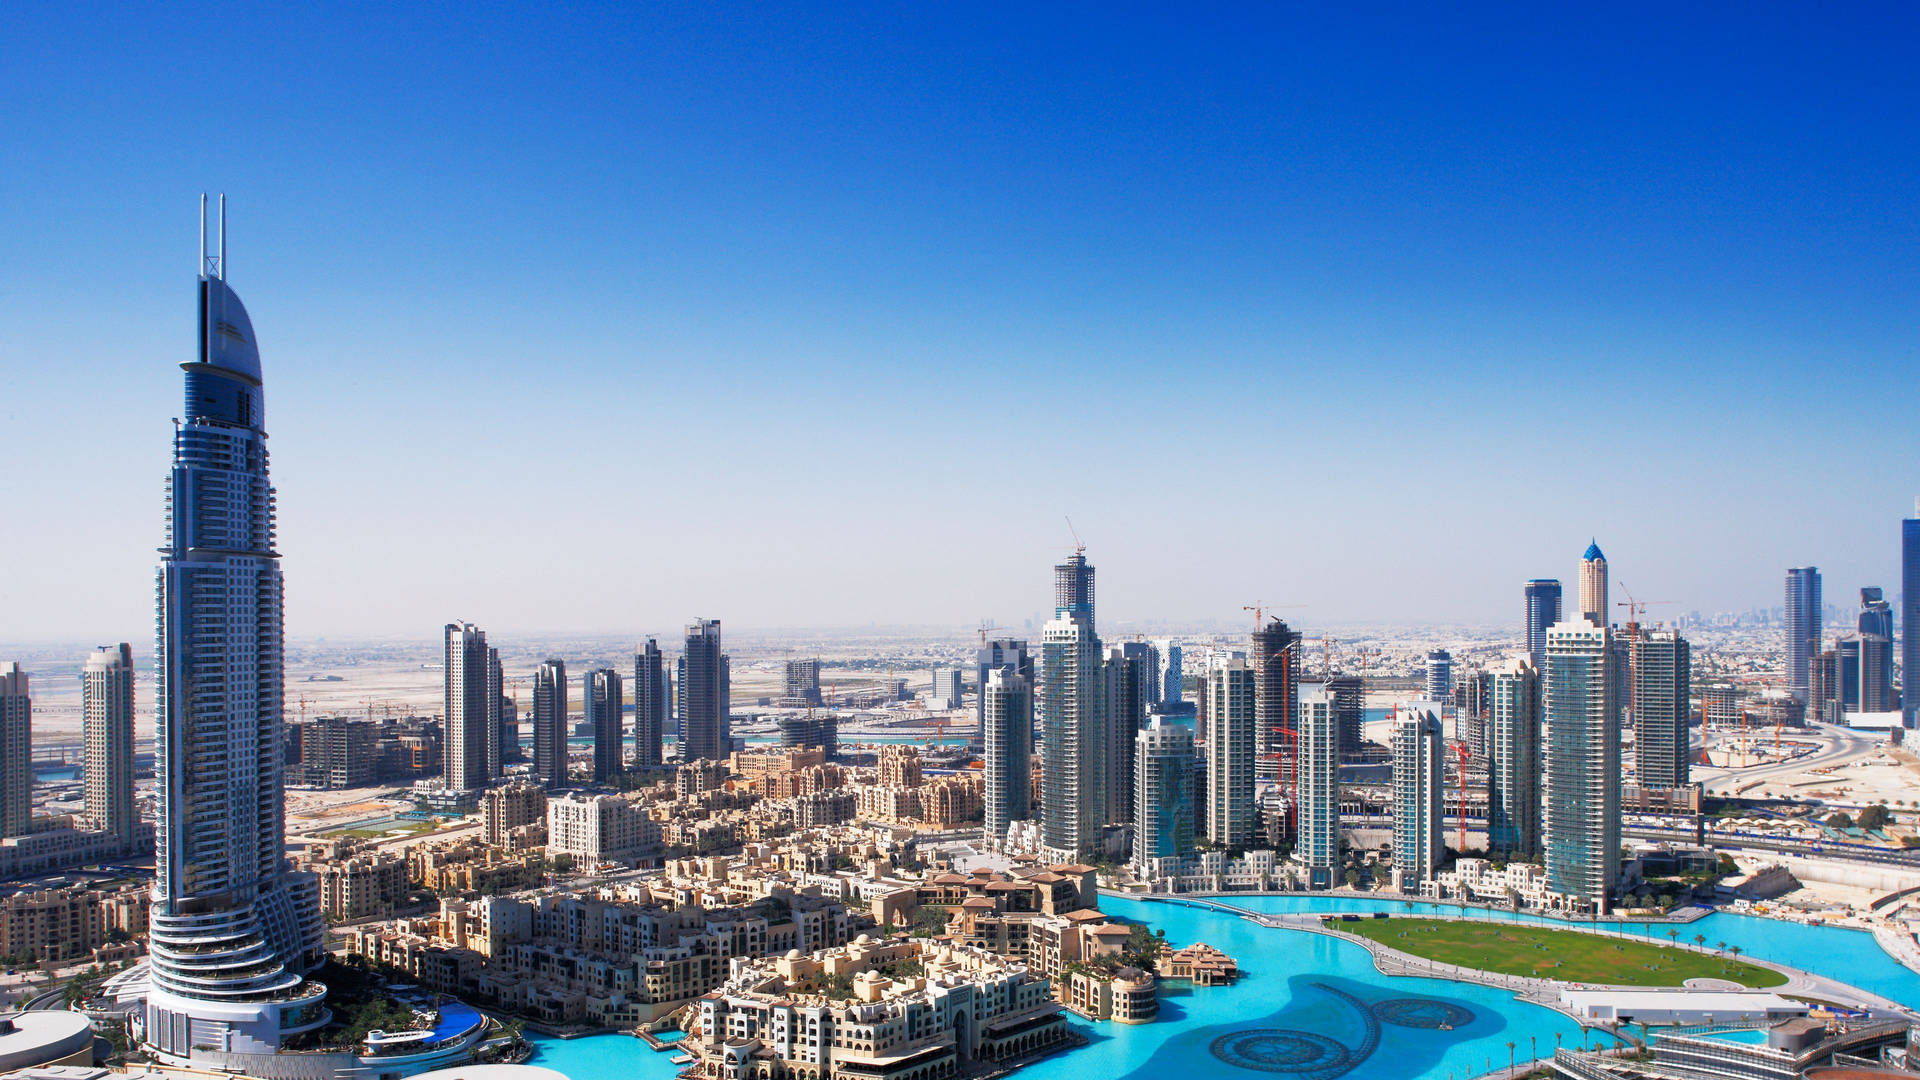 Urbanscapeunter Blauem Himmel, Dubai 4k Wallpaper